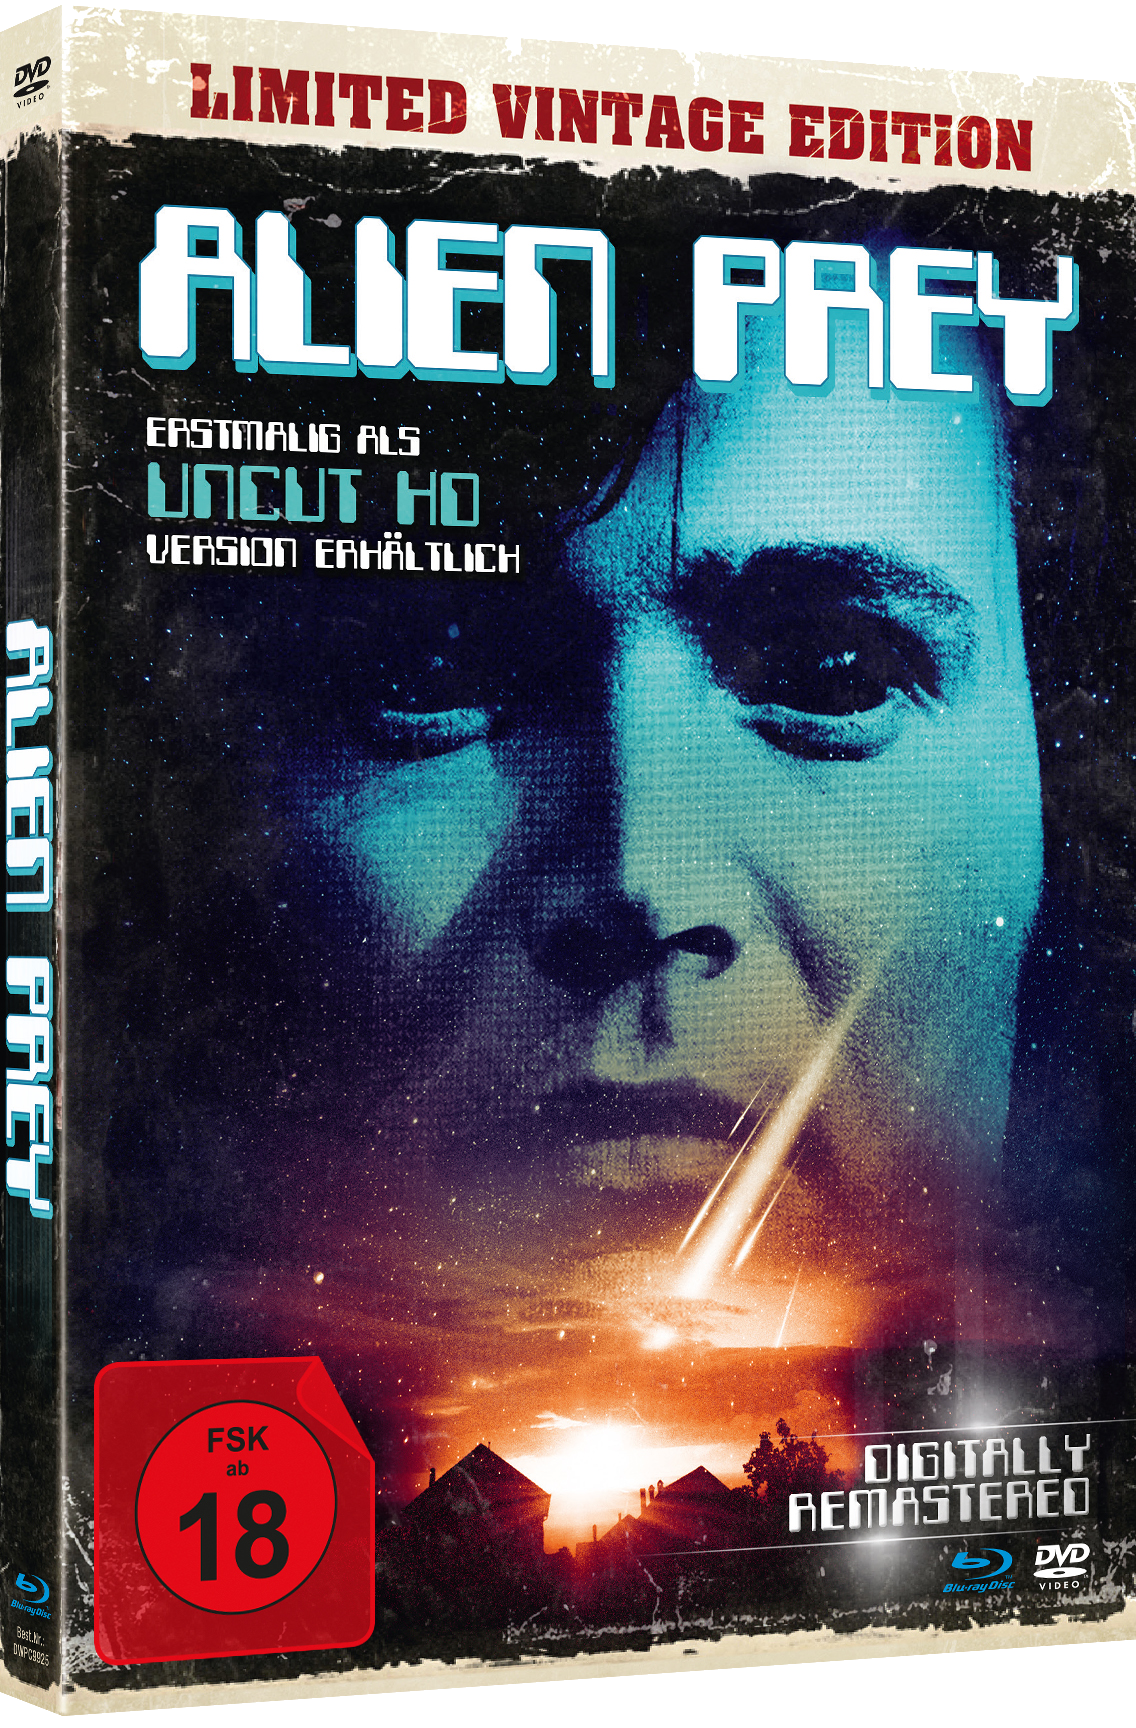 DVD Edition Alien Mediabook) Blu-ray Prey-Uncut (DVD+BD +